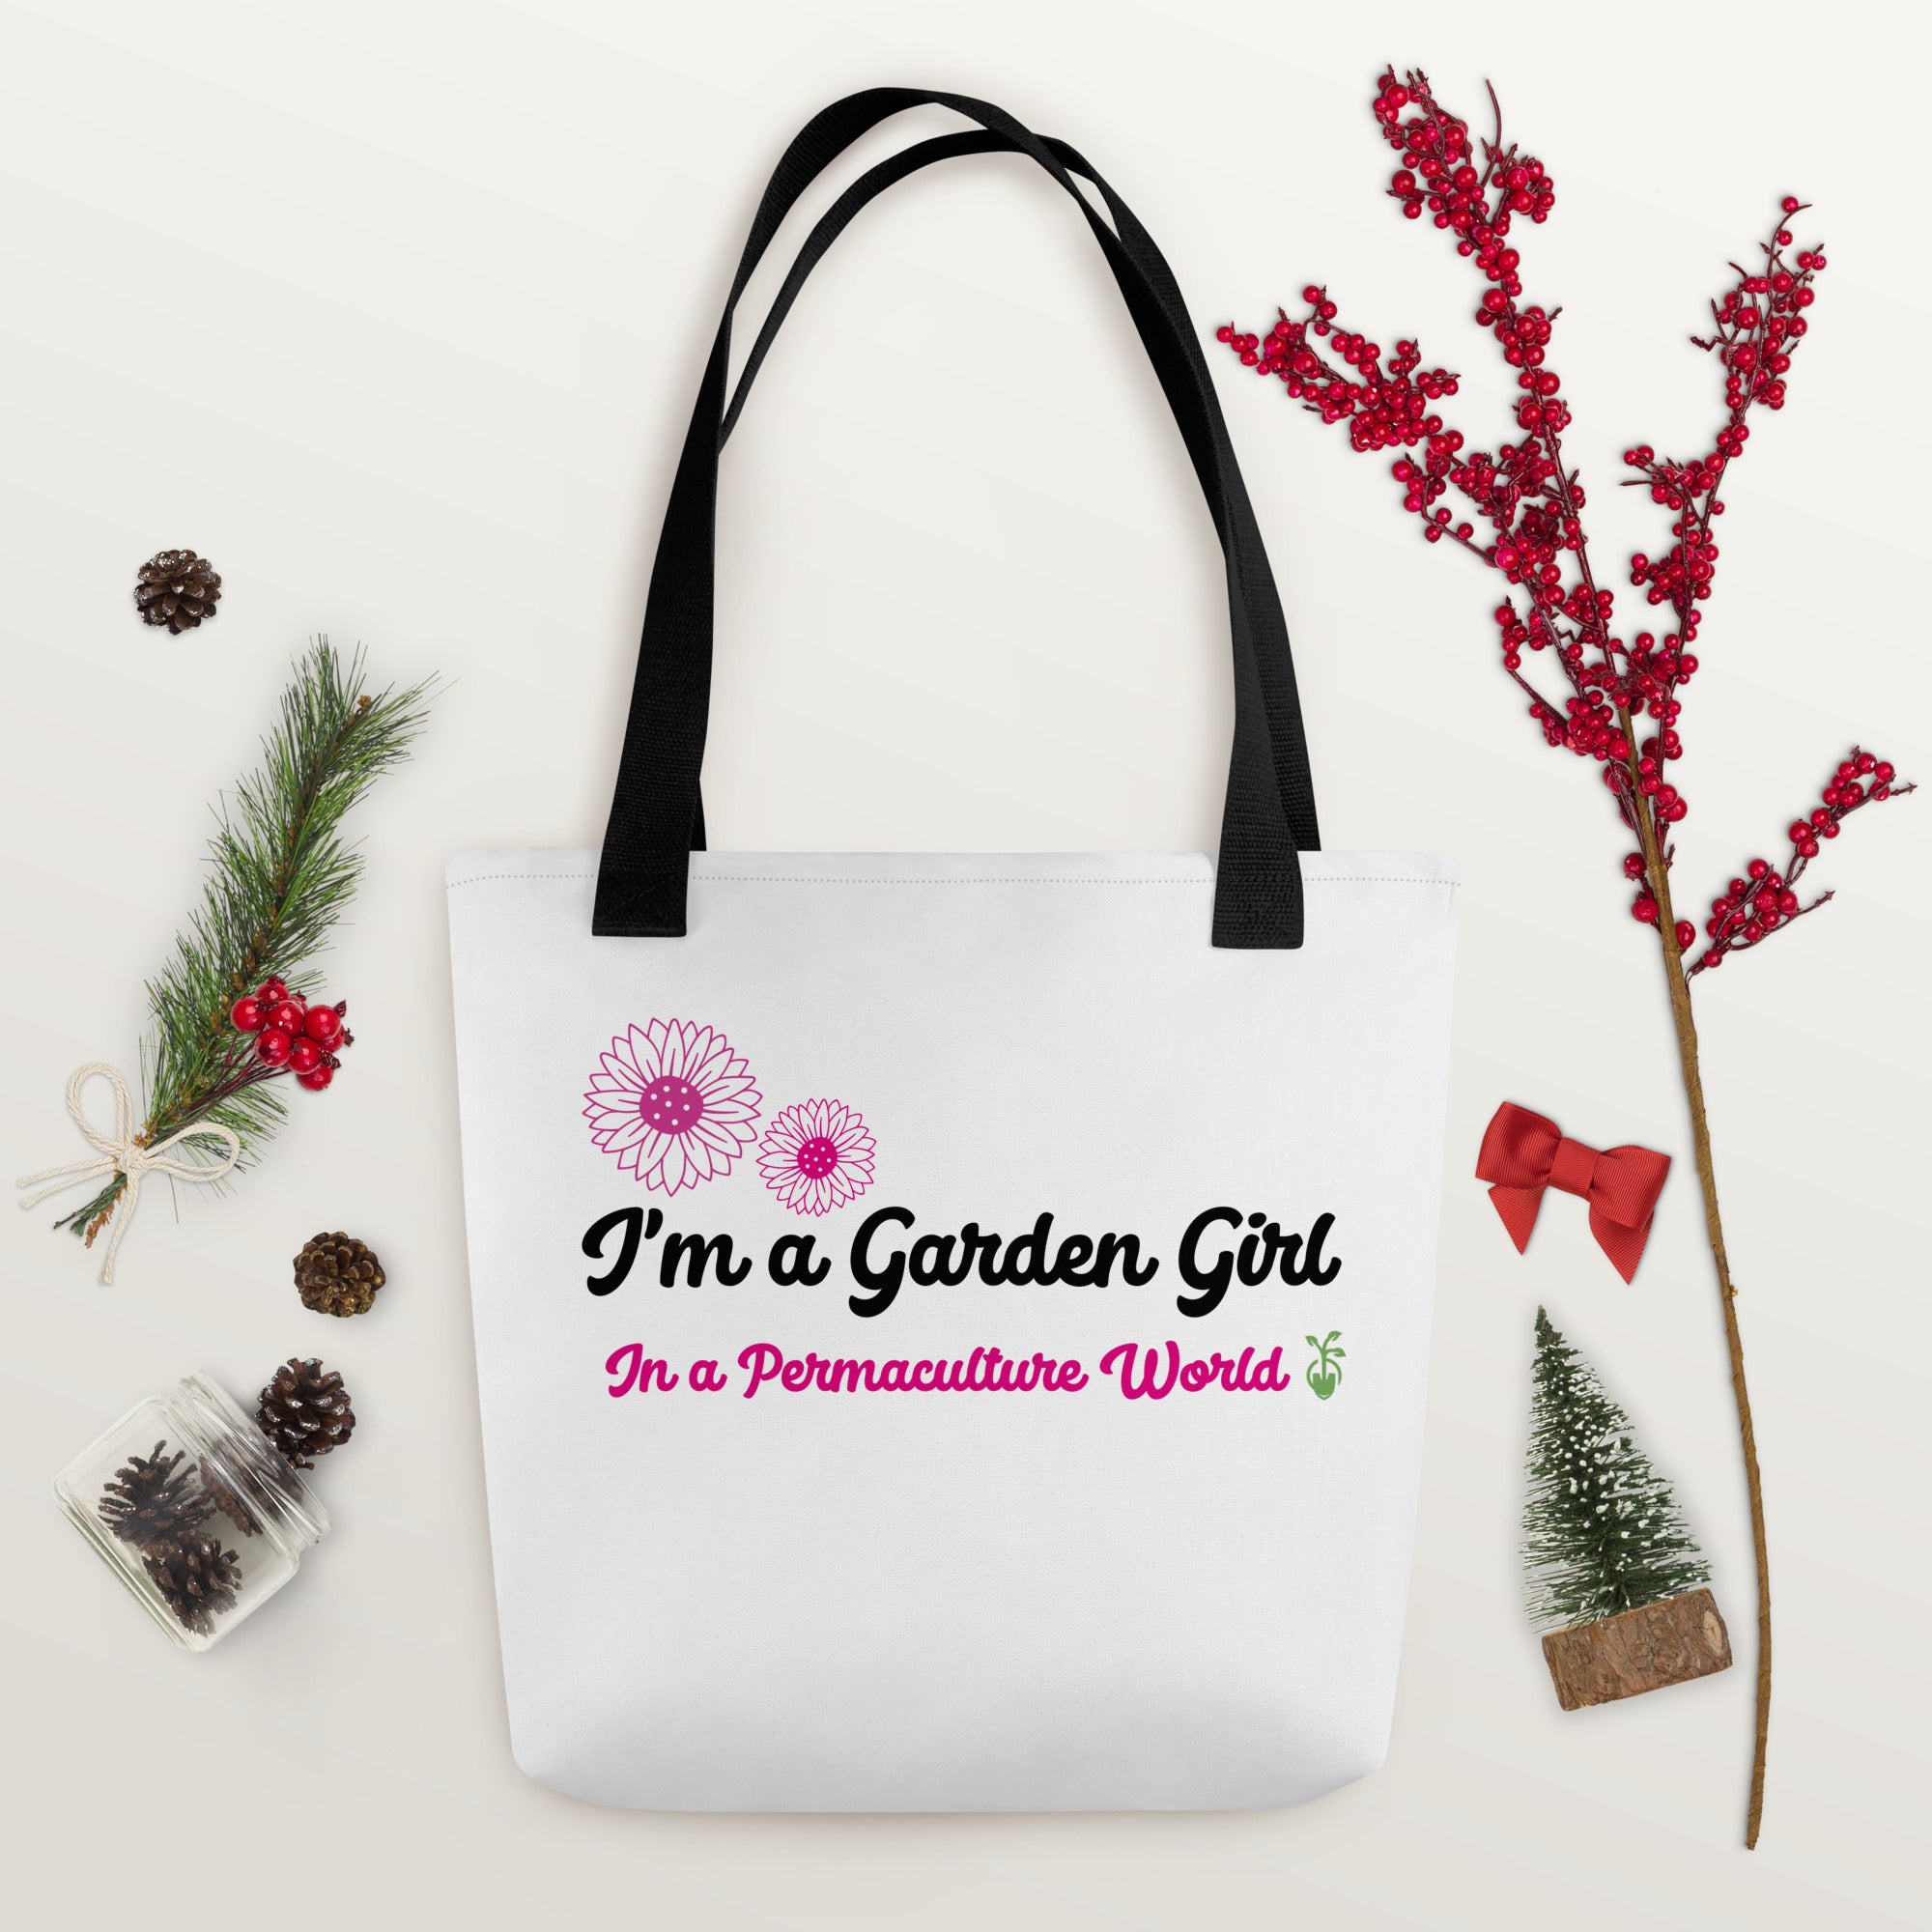 I'm a Garden Girl Tote bag